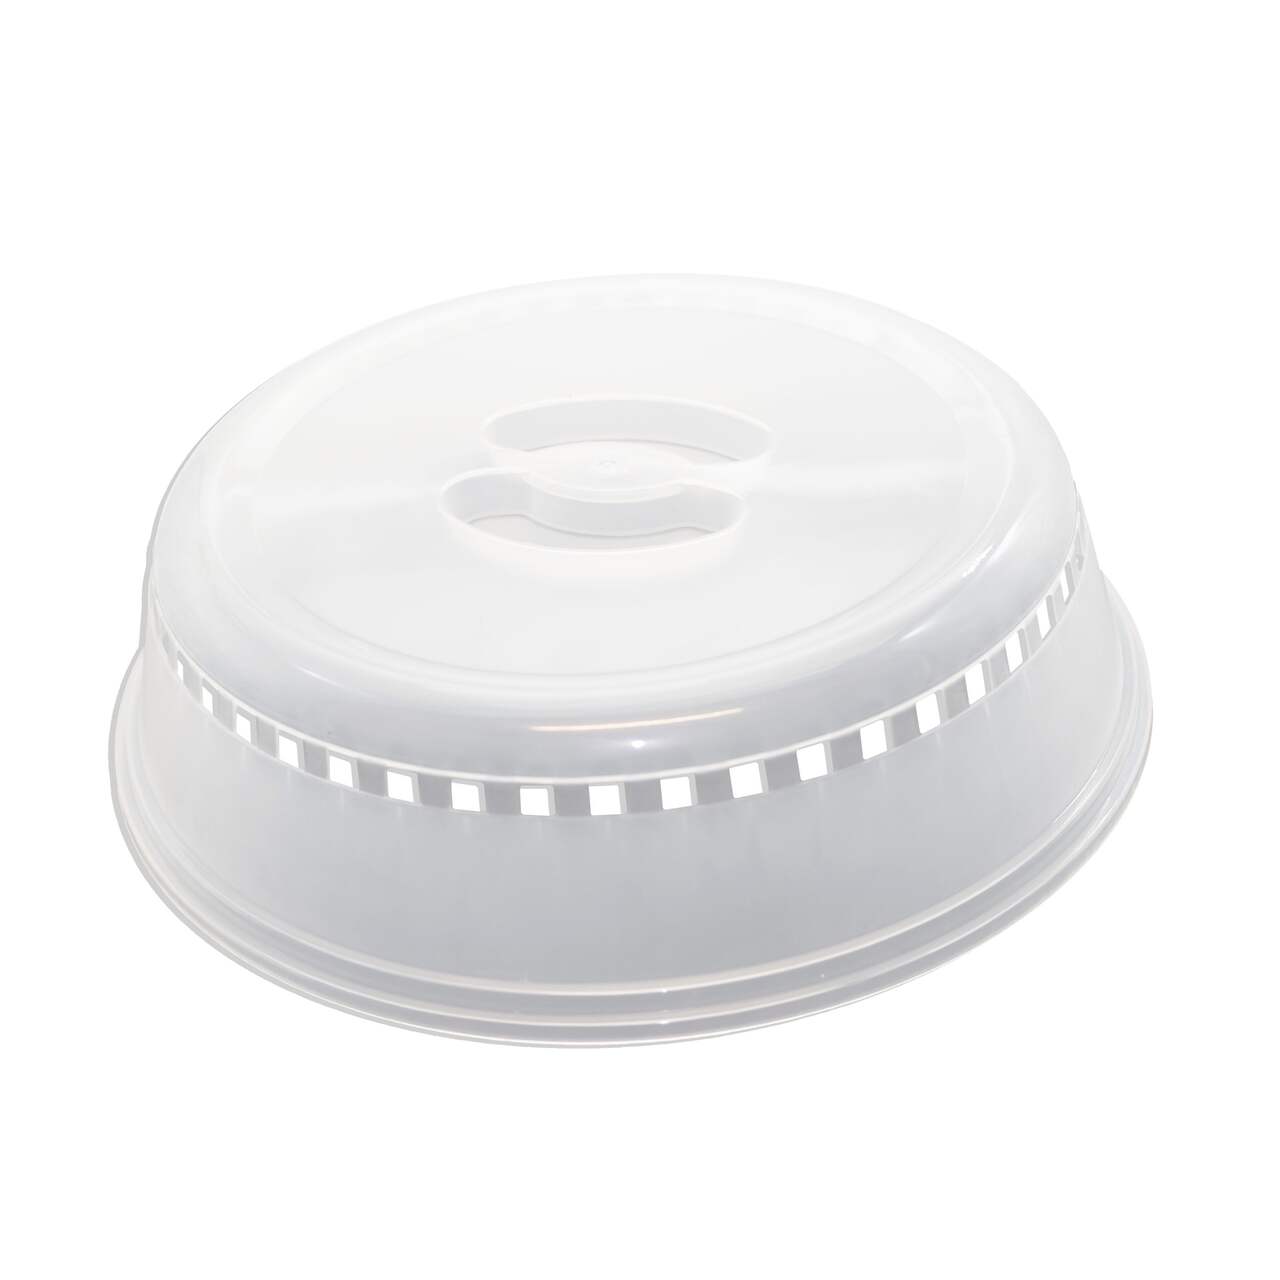 Nordicware Microwave Spatter/Splatter Cover BPA-Free, Dishwasher Safe,  25.4cm